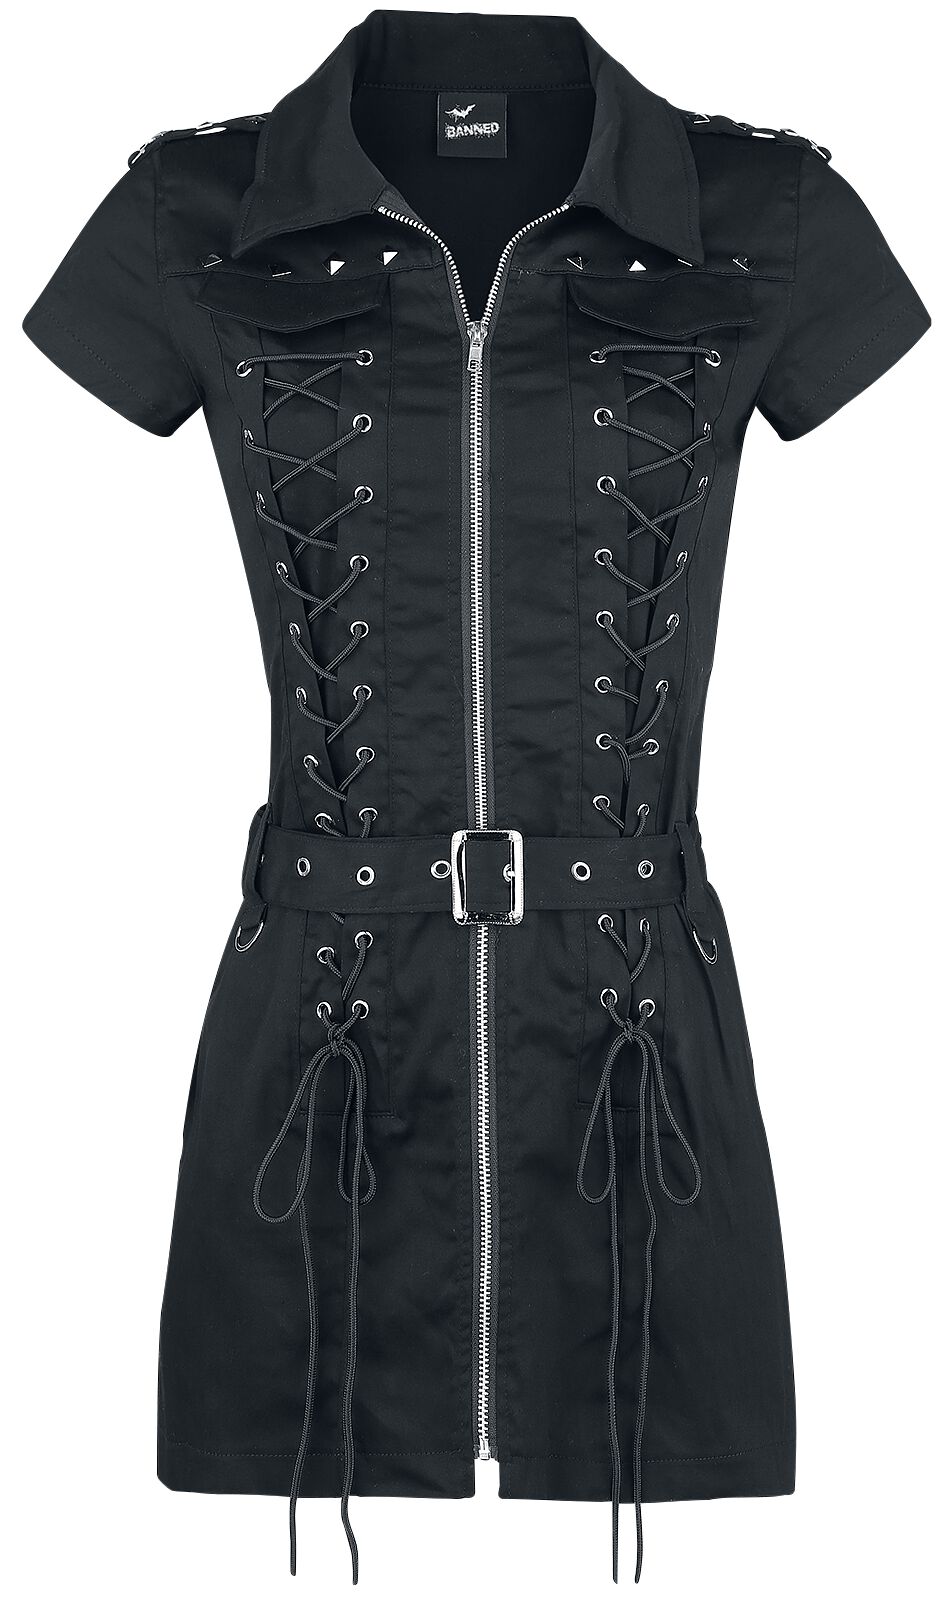 Image of Miniabito Gothic di Banned Alternative - Mod Dress - XS a XL - Donna - nero